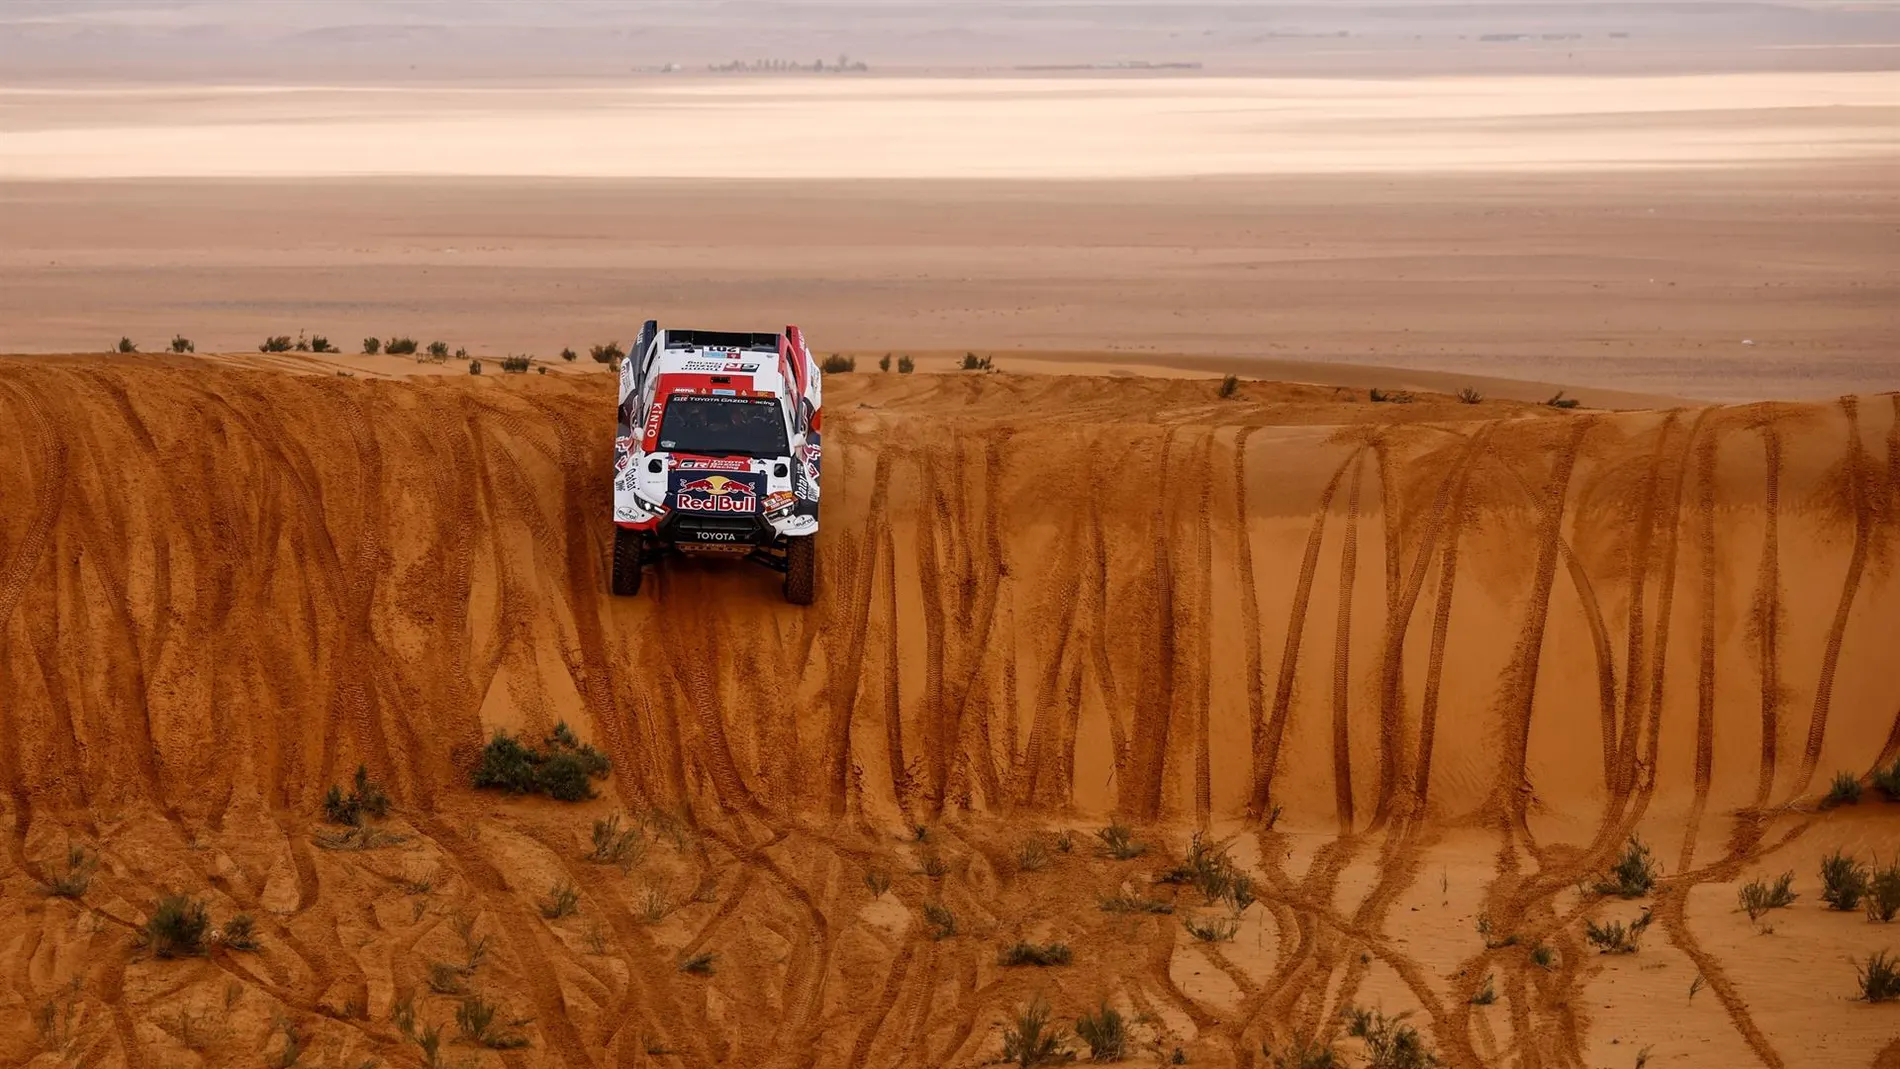 Polémica por la no descalificación de Al-Attiyah en el Dakar tras no conectar la caja negra de su Toyota